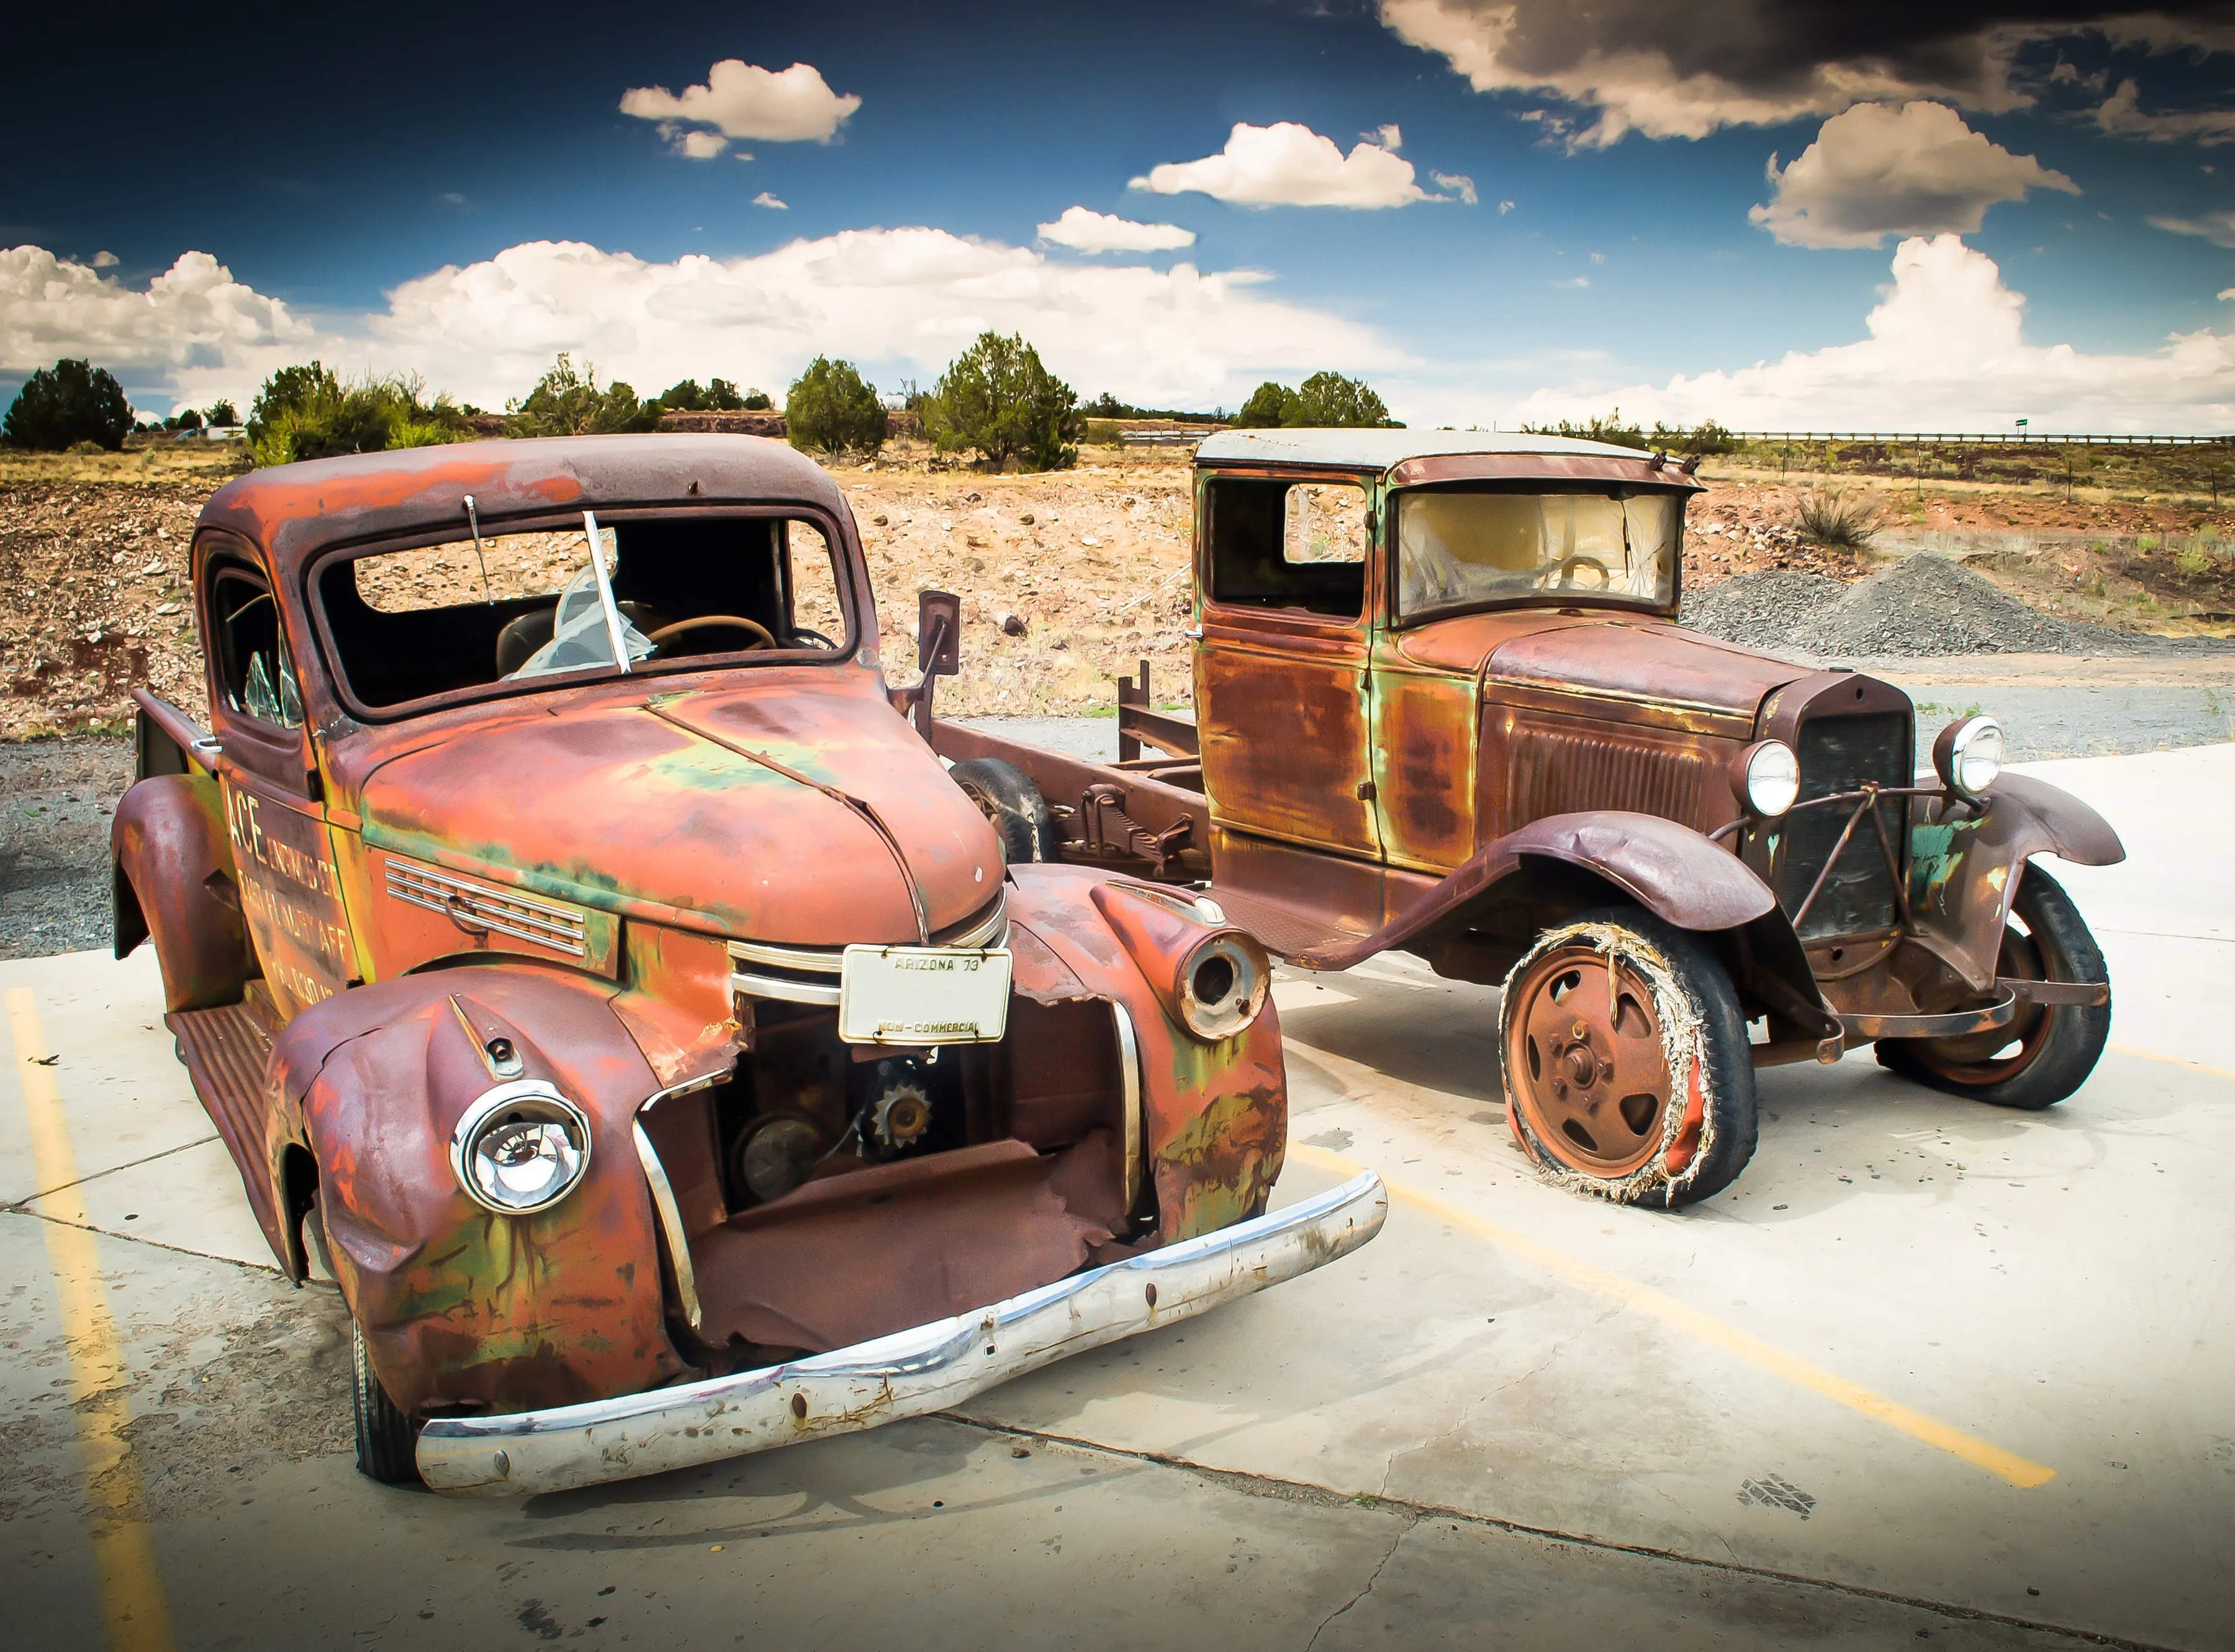 PAPERMOON Fototapete "Abandoned Old Cars" Tapeten Gr. B/L: 2,5 m x 1,86 m, Bahnen: 5 St., bunt (mehrfarbig) Fototapeten